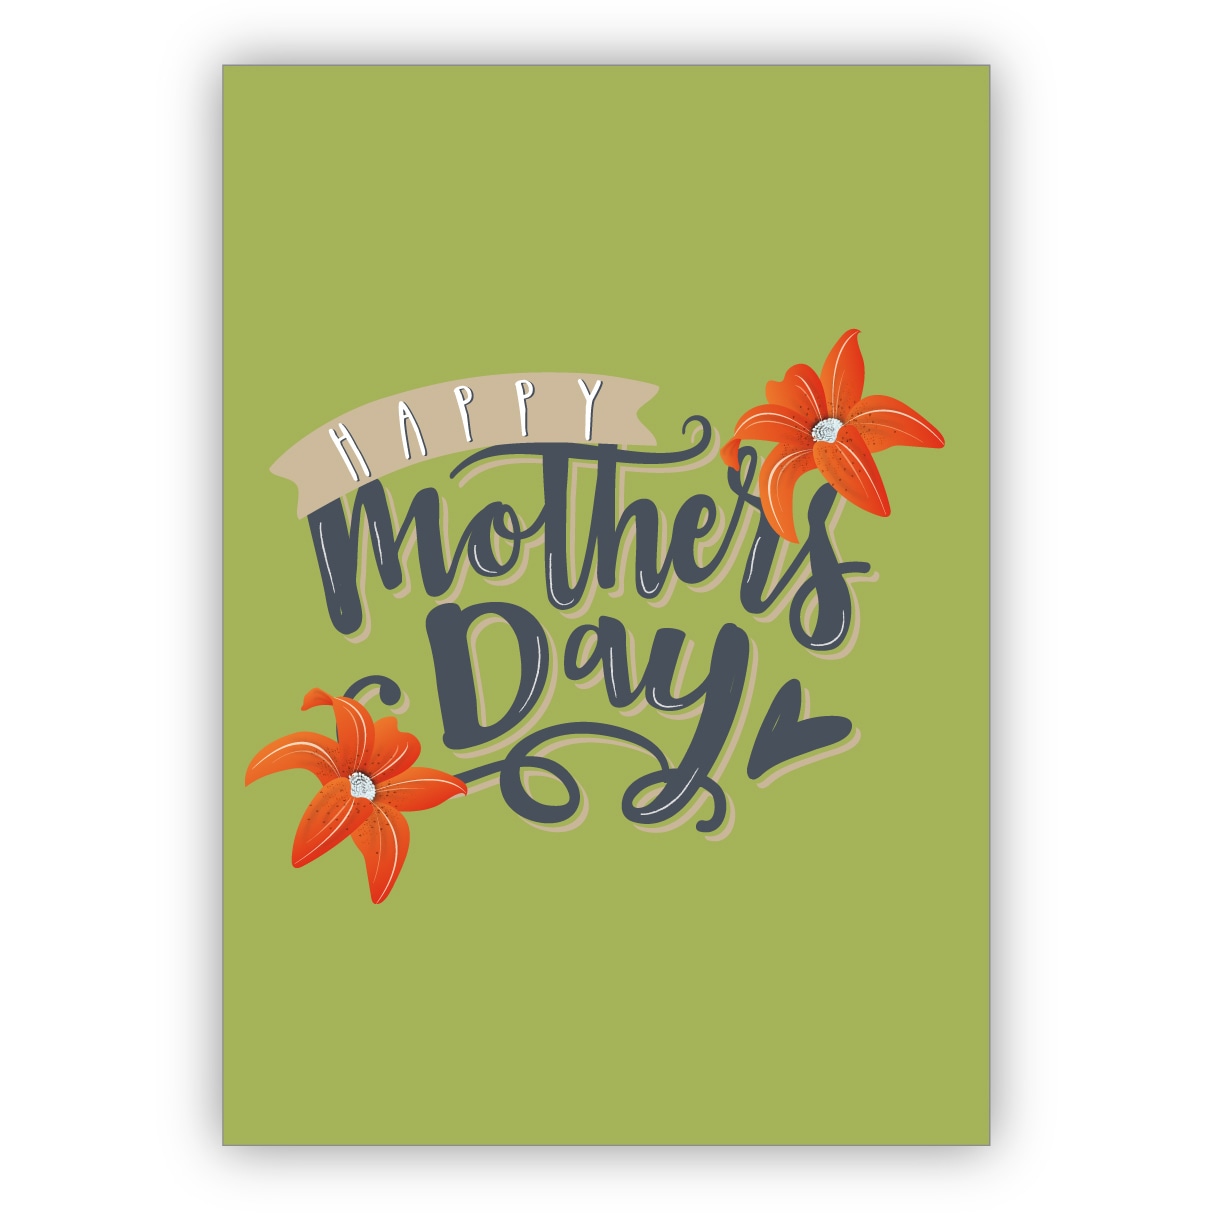 Schicke Surfer Glückwunschkarte zum Muttertag, Muttertagskarte auf grün: Happy Mother's day